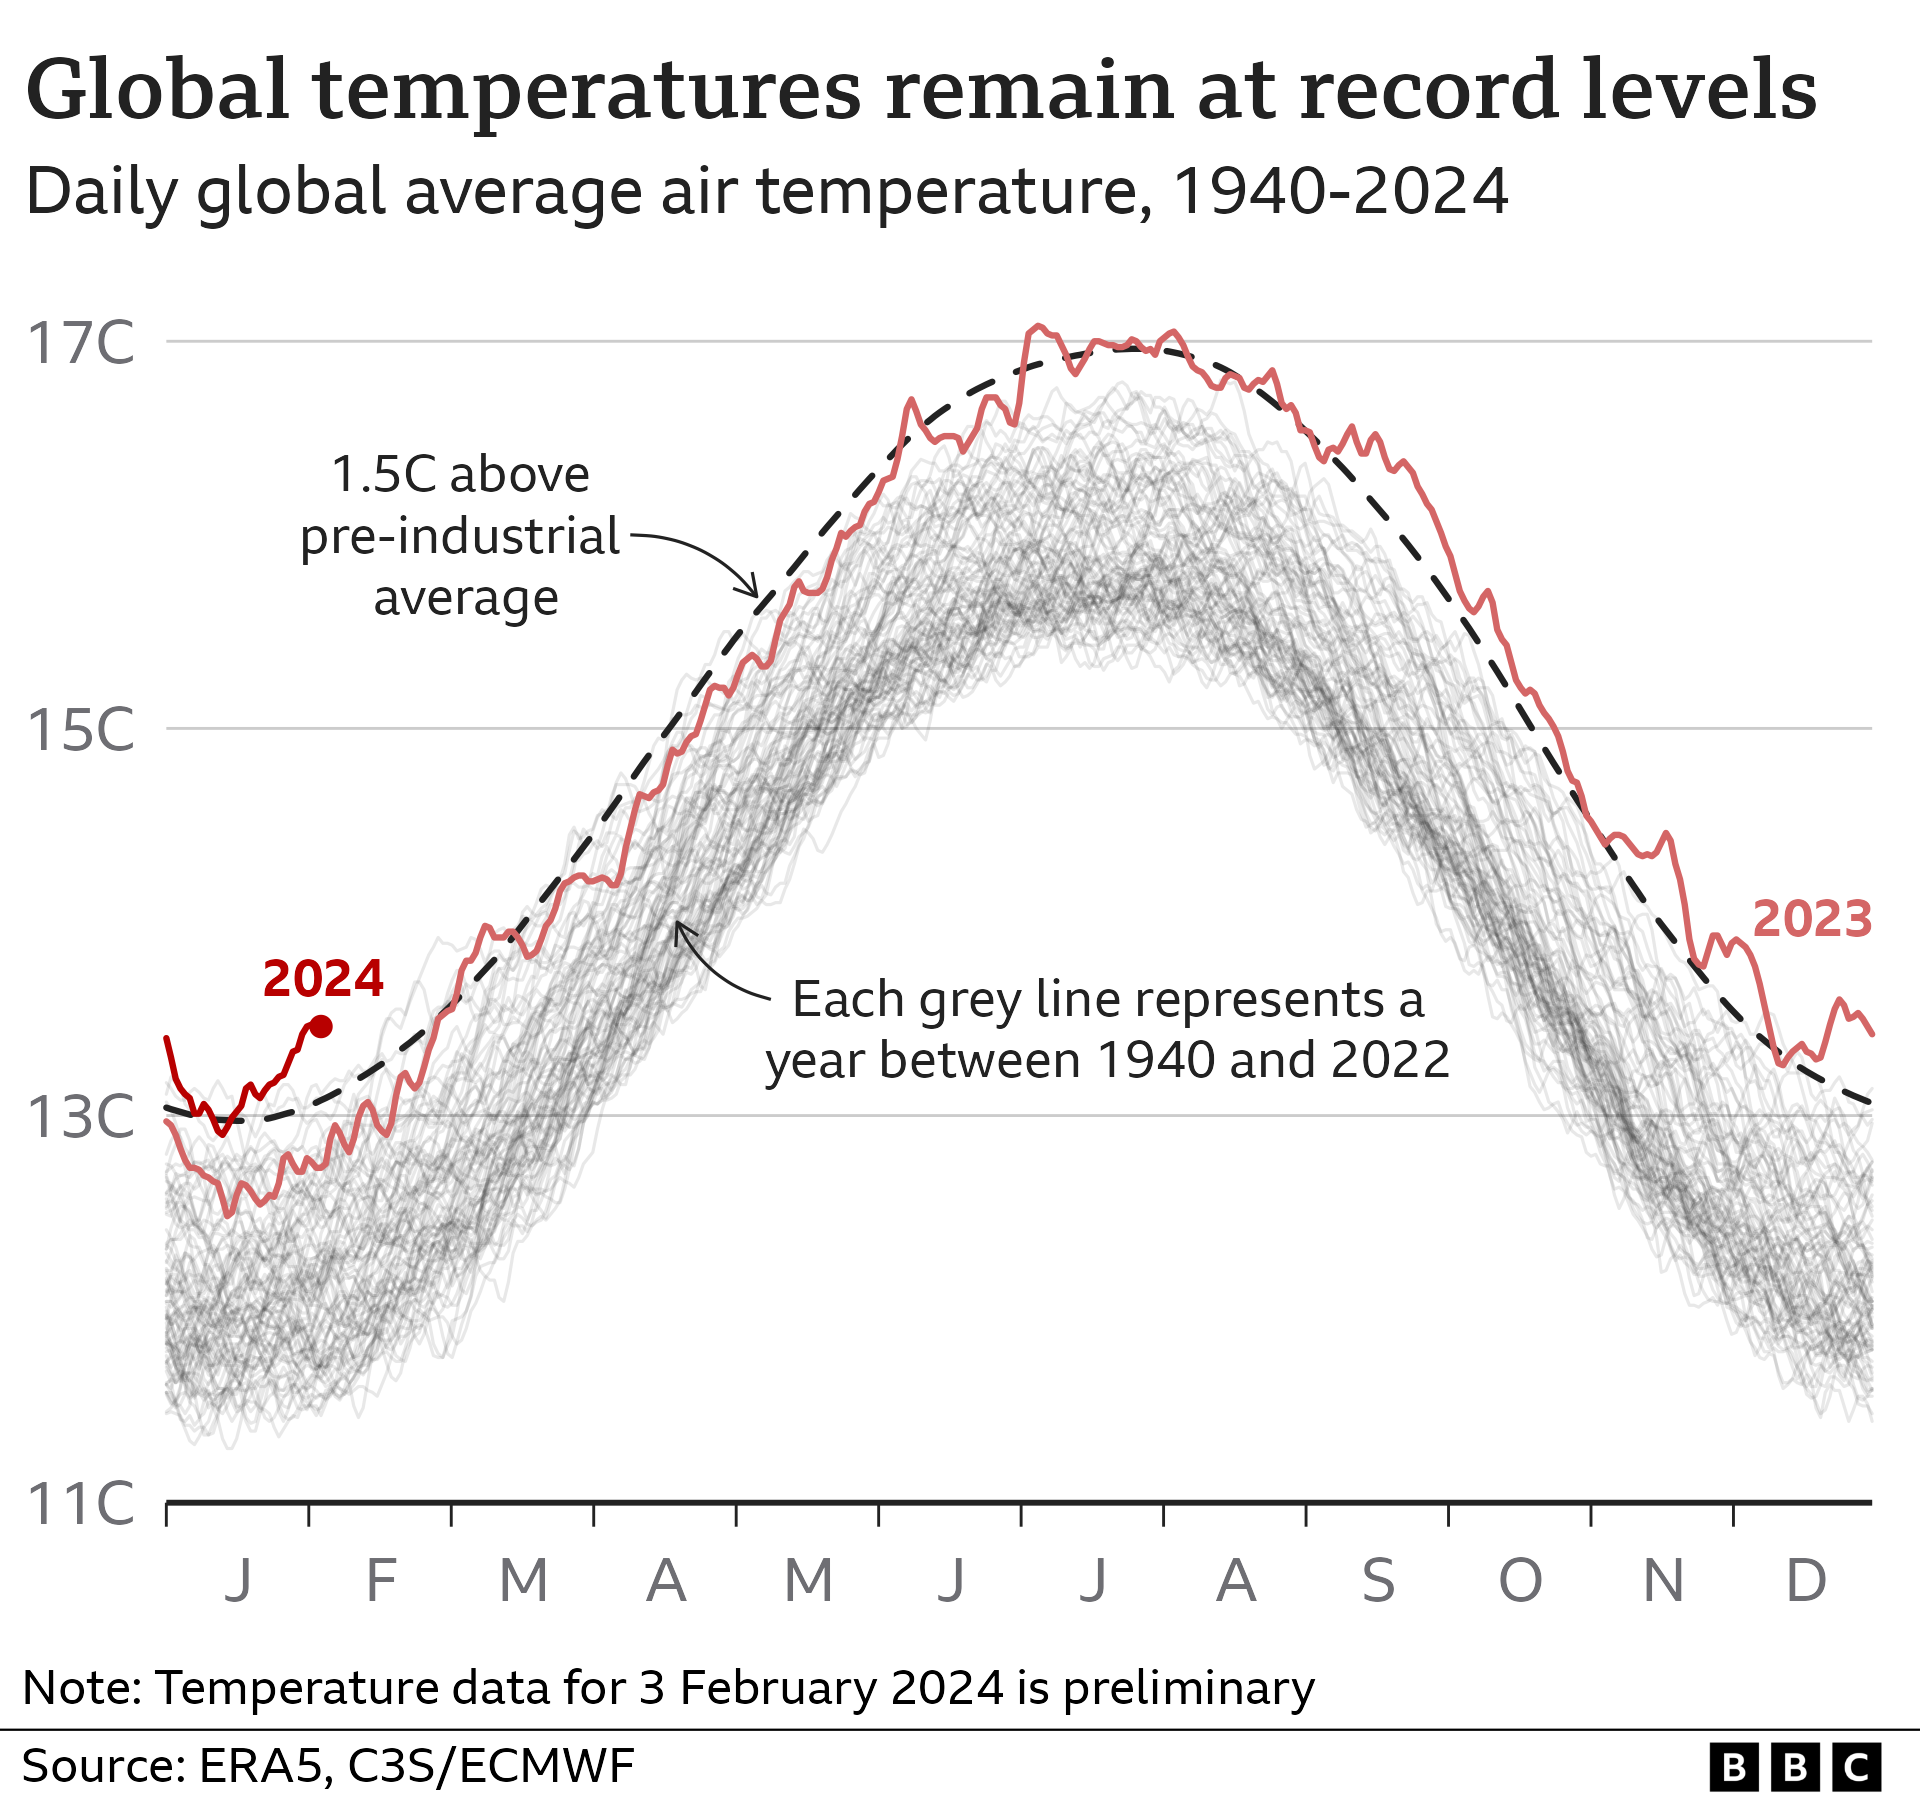 Graphique à lignes multiples représentant les températures mondiales moyennes de l'air chaque jour de l'année, de 1940 à 2024. Les températures ont dépassé 1,5 °C au-dessus des niveaux préindustriels presque tous les jours depuis le milieu de 2023, et cela s'est poursuivi jusqu'en 2024.